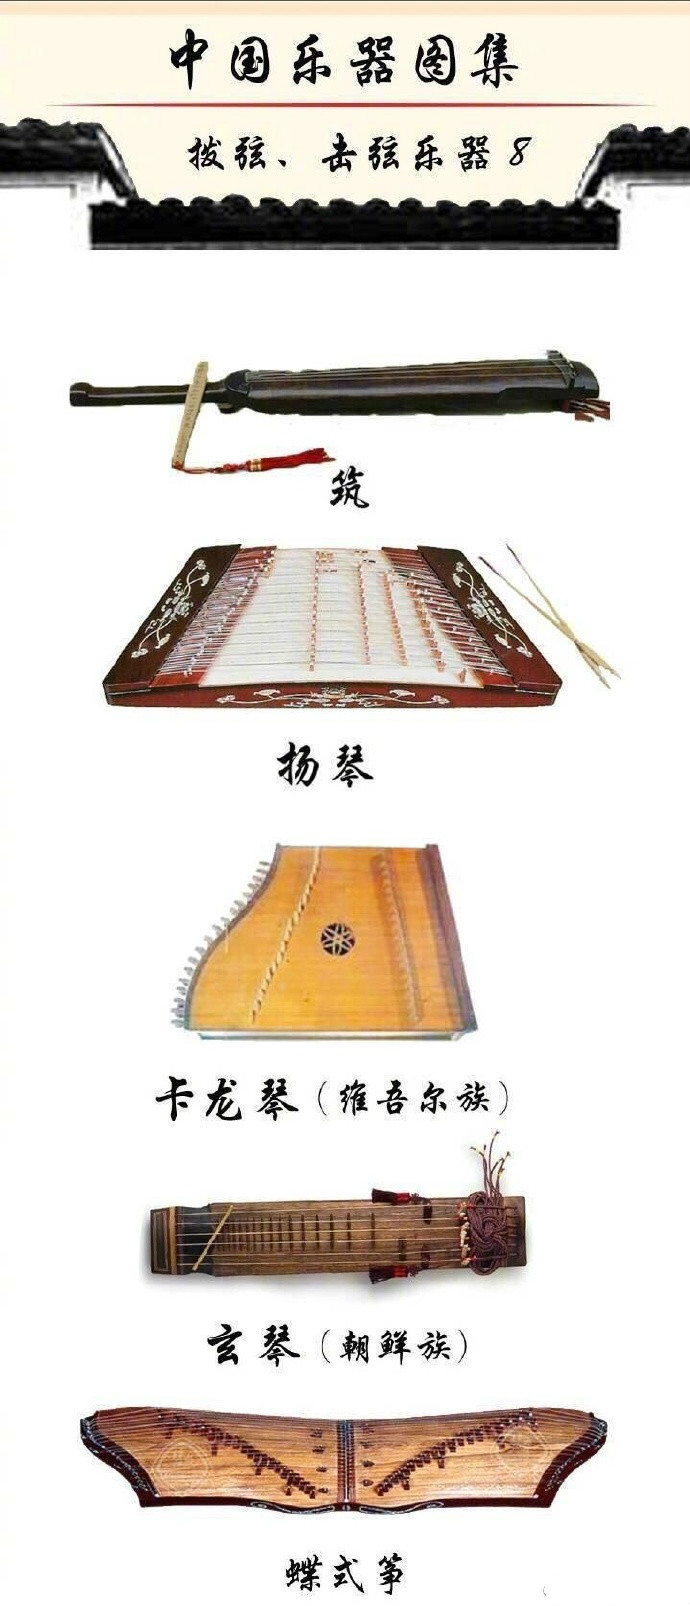 中国乐器图集:种类繁多的乐器大全